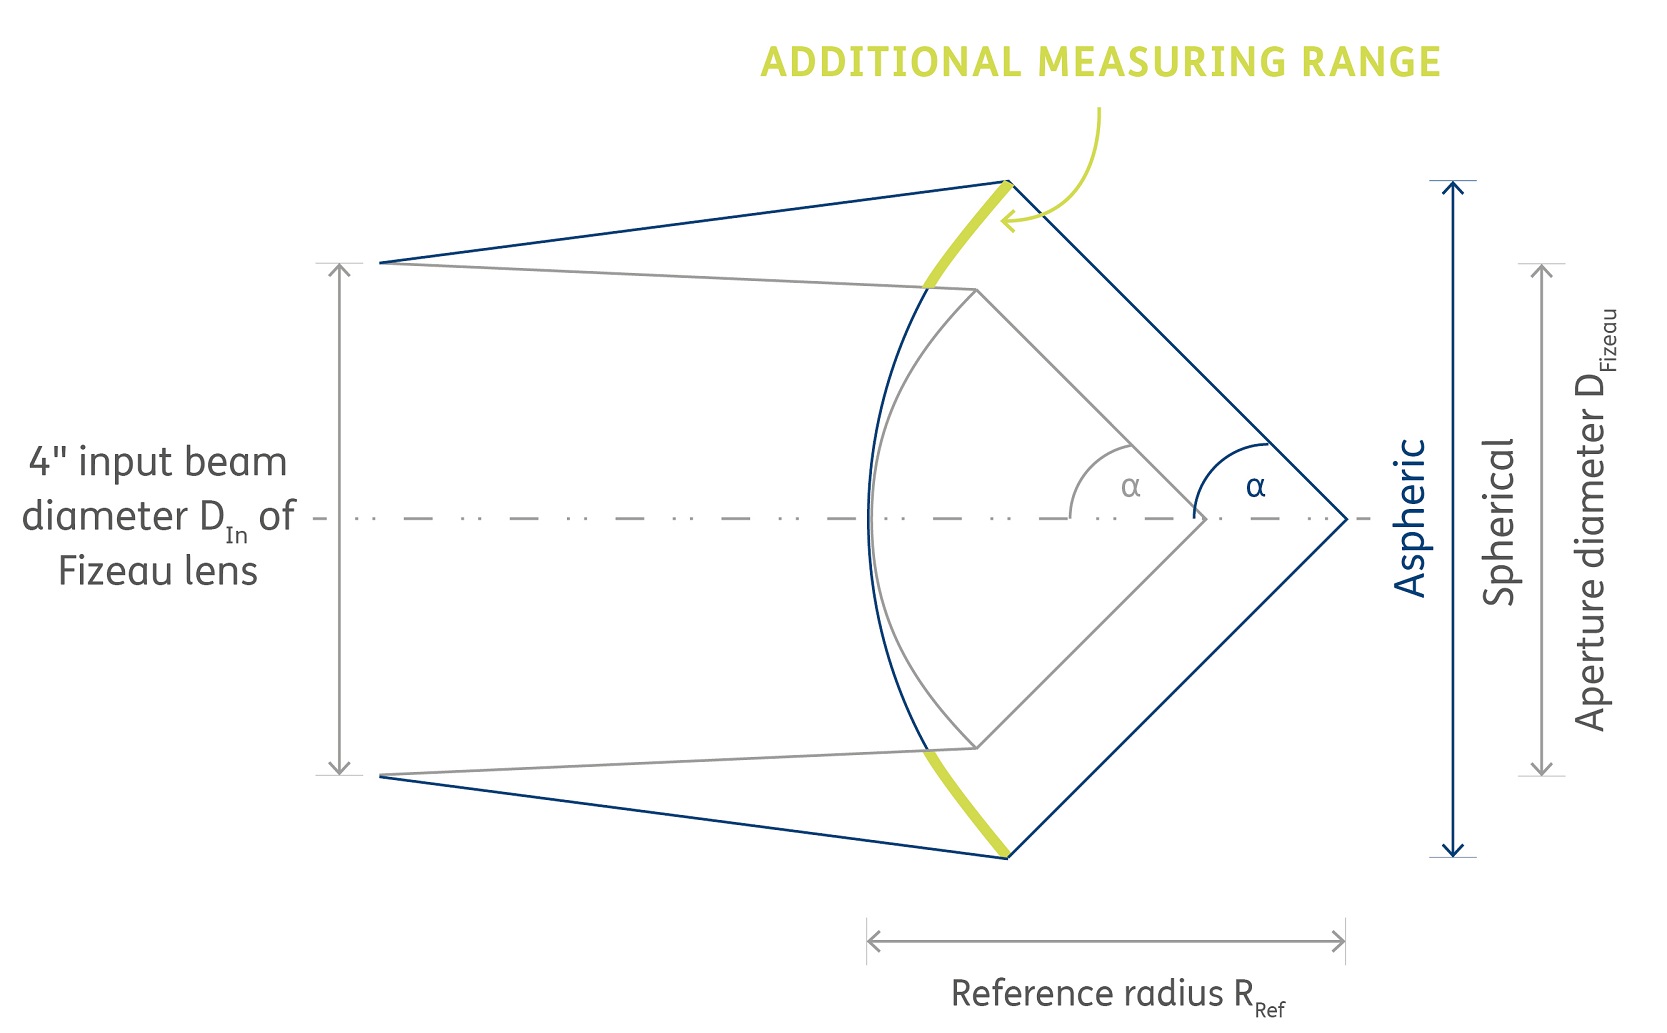 Measuring ranges in comparision: Aspheric vs. spherical Fizeau lens